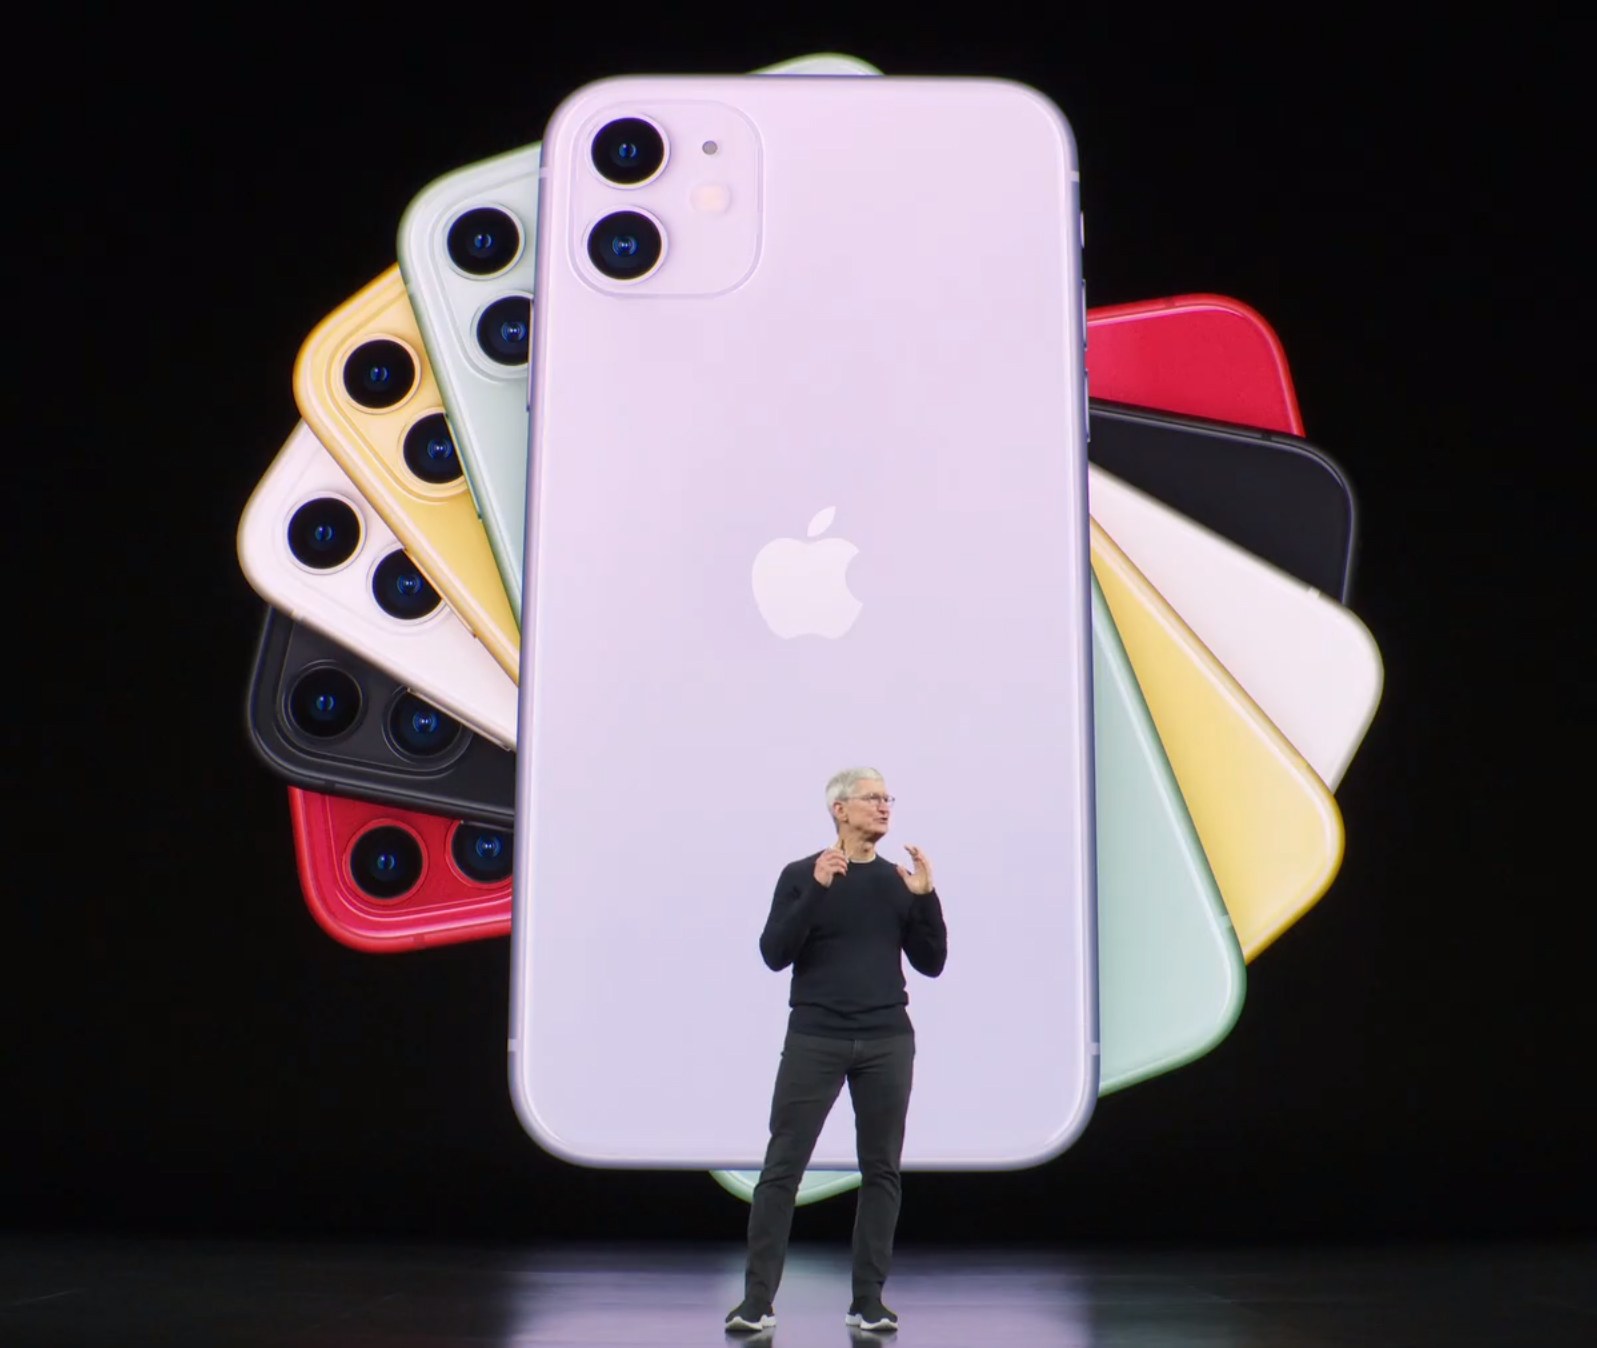 iPhone 11 es el nuevo teléfono más barato de Apple para ejecutar apps musicales